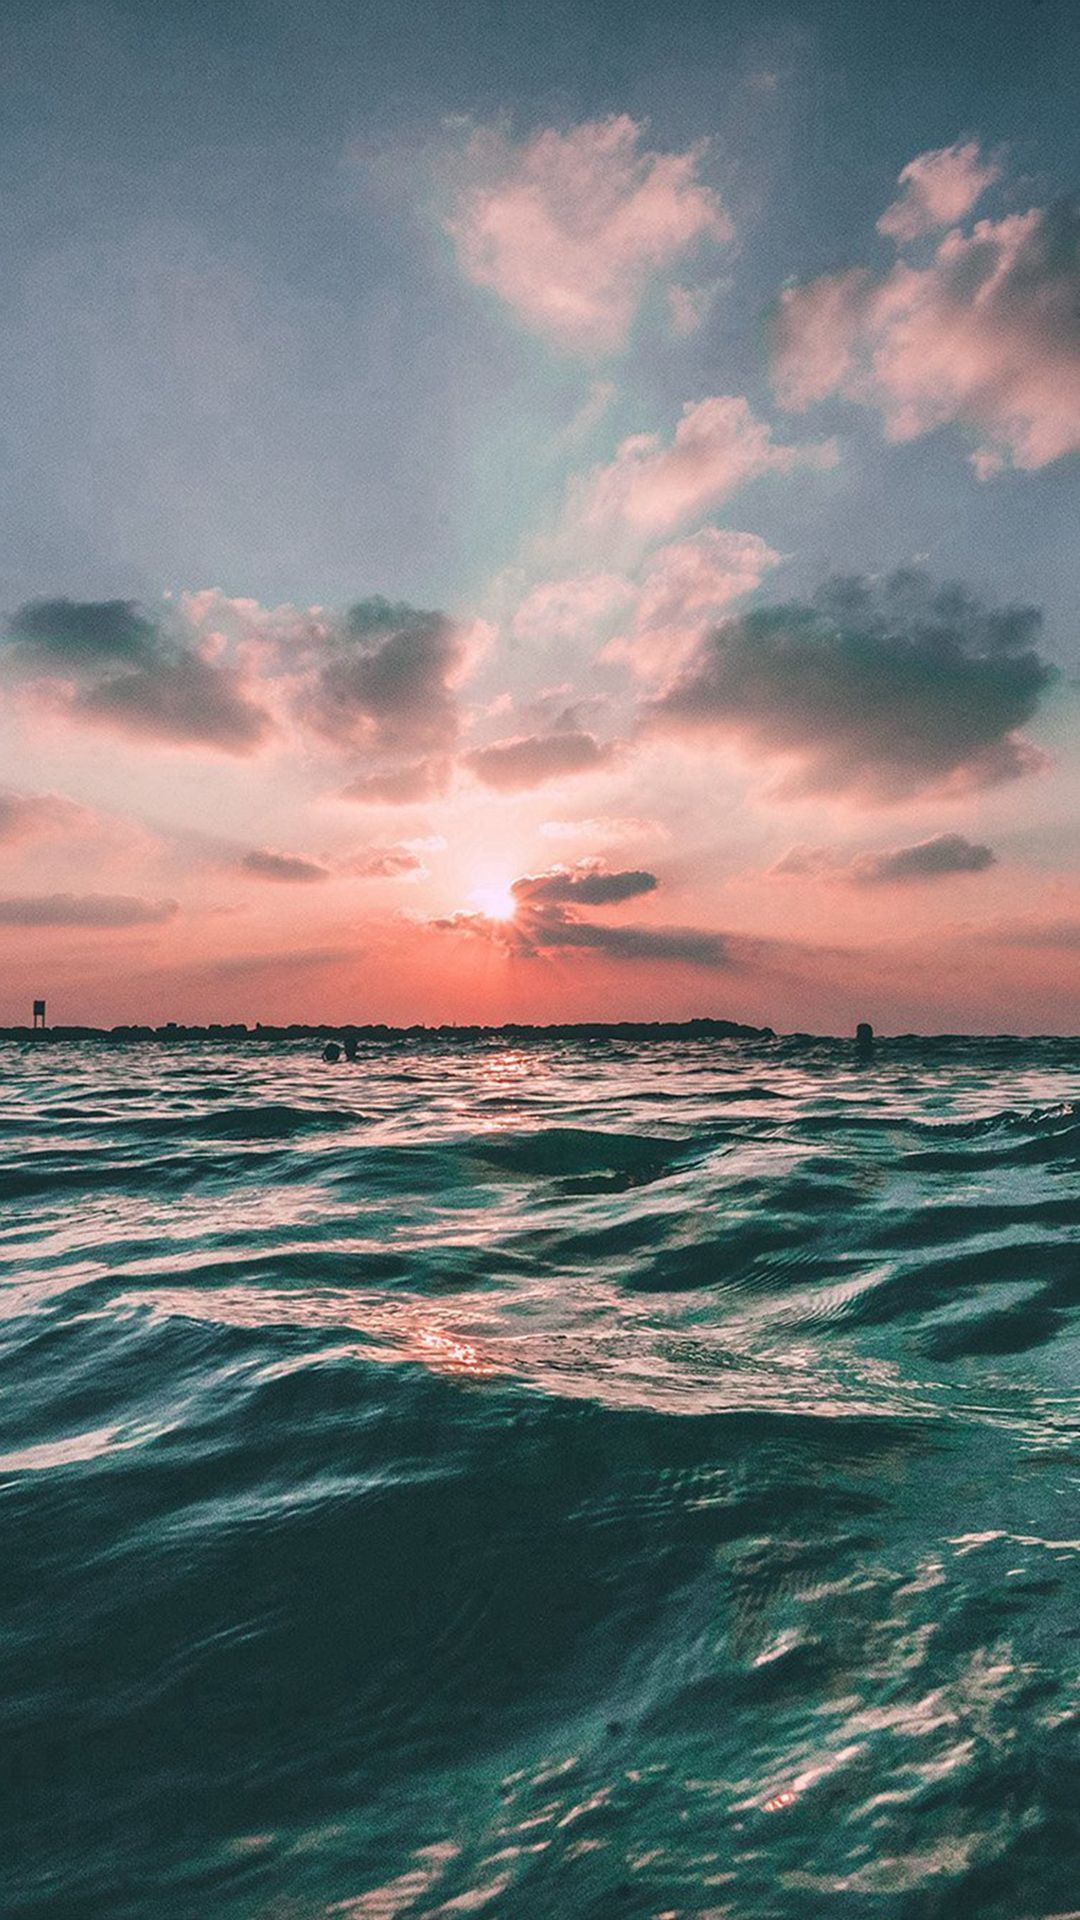  Meer Hintergrundbild 1080x1920. Aesthetic Ocean Photography ; Landscape Ocean. Ocean wallpaper, iPhone wallpaper ocean, Sunset wallpaper